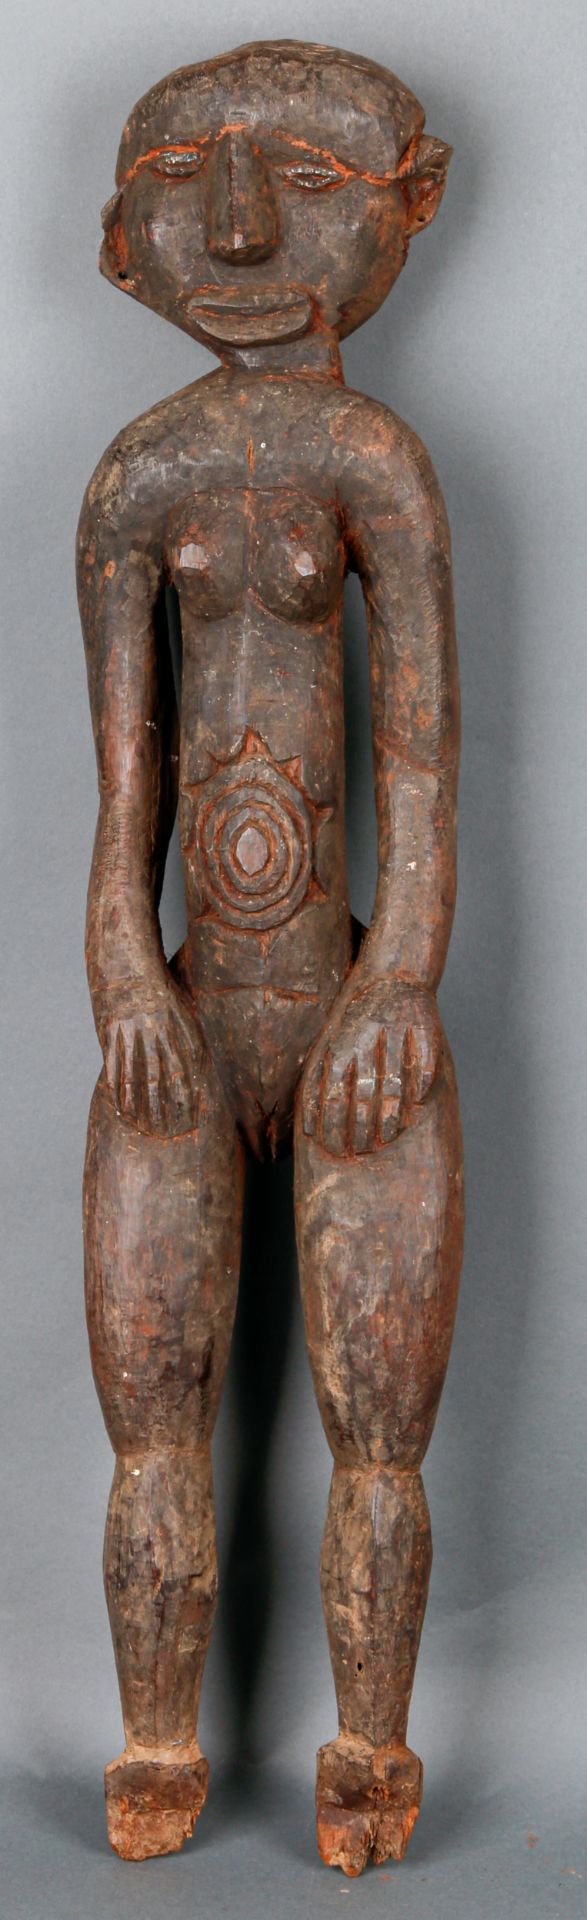 Figur einer Frau, vermutlich Ahnen- und Fruchtbarkeitsfigur, 20. Jh.